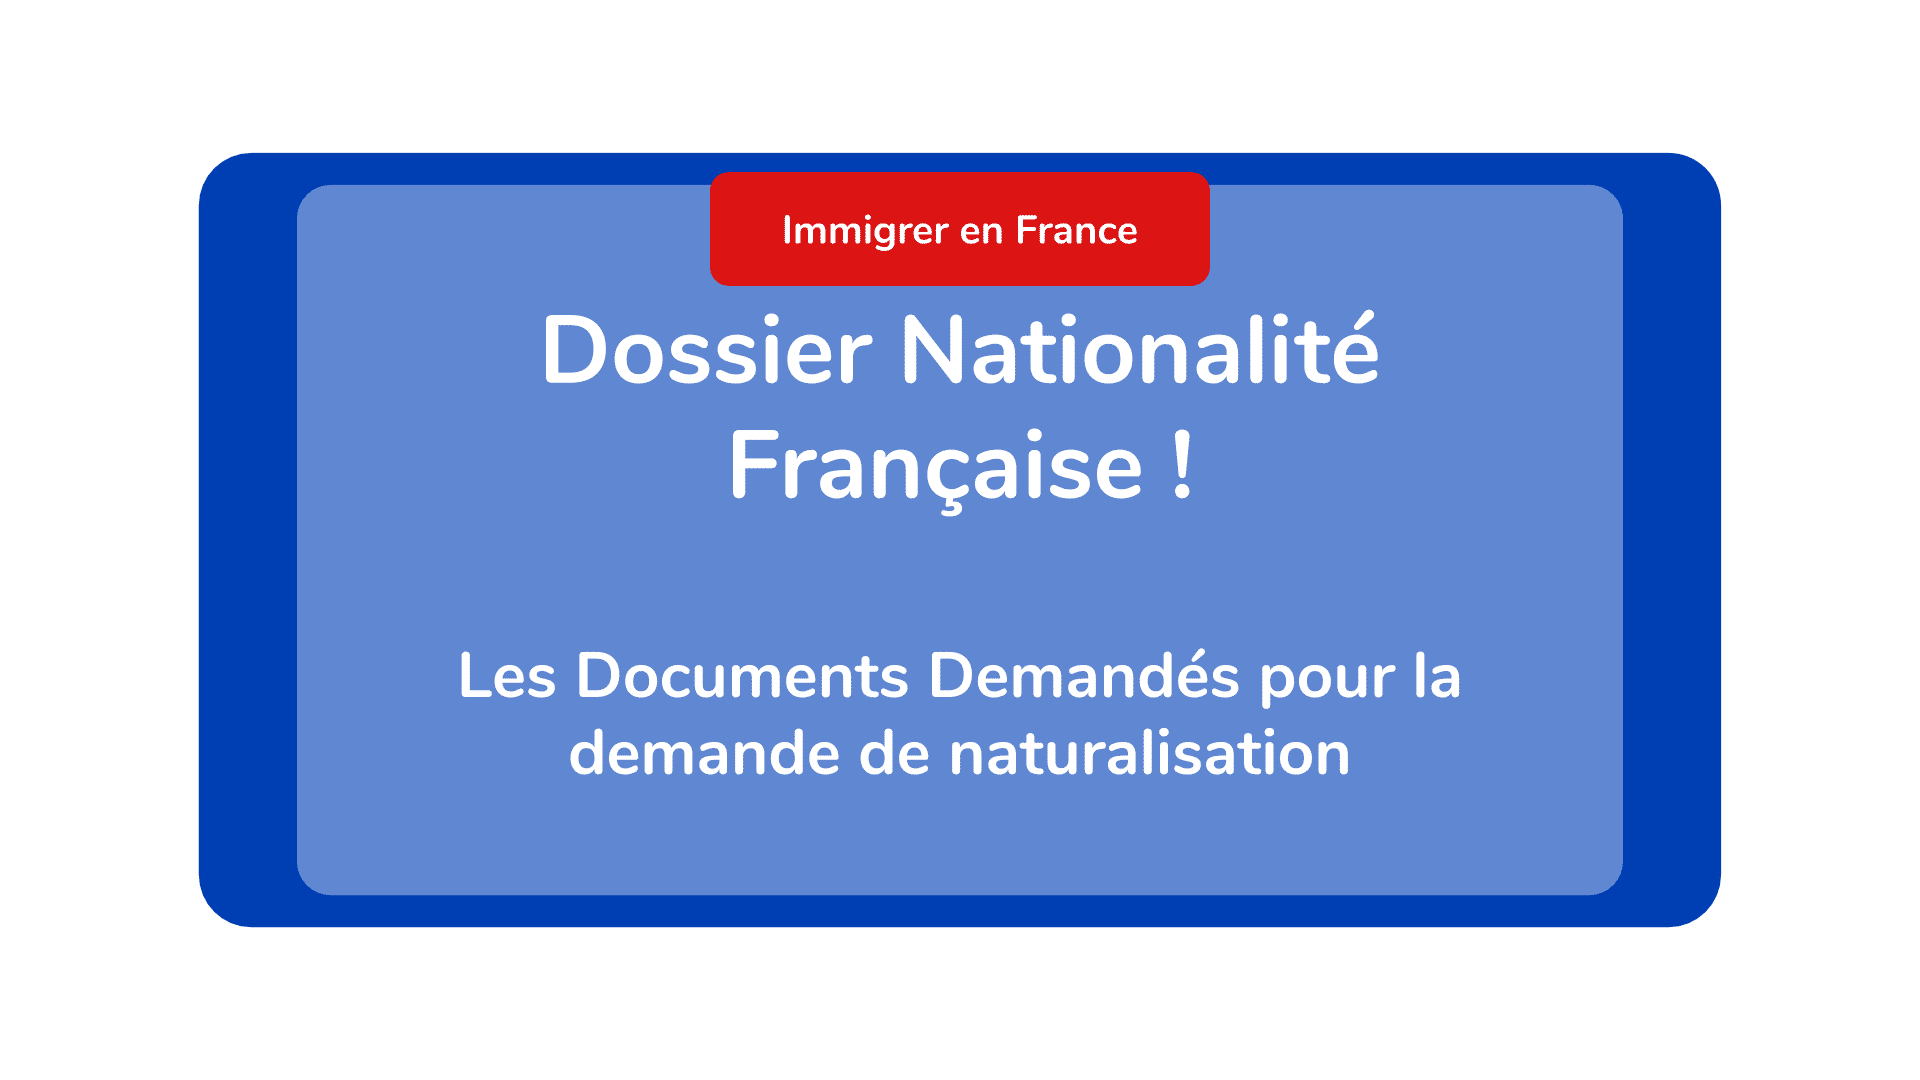 Dossier Nationalité Française - Les Documents Demandés pour la demande de naturalisation